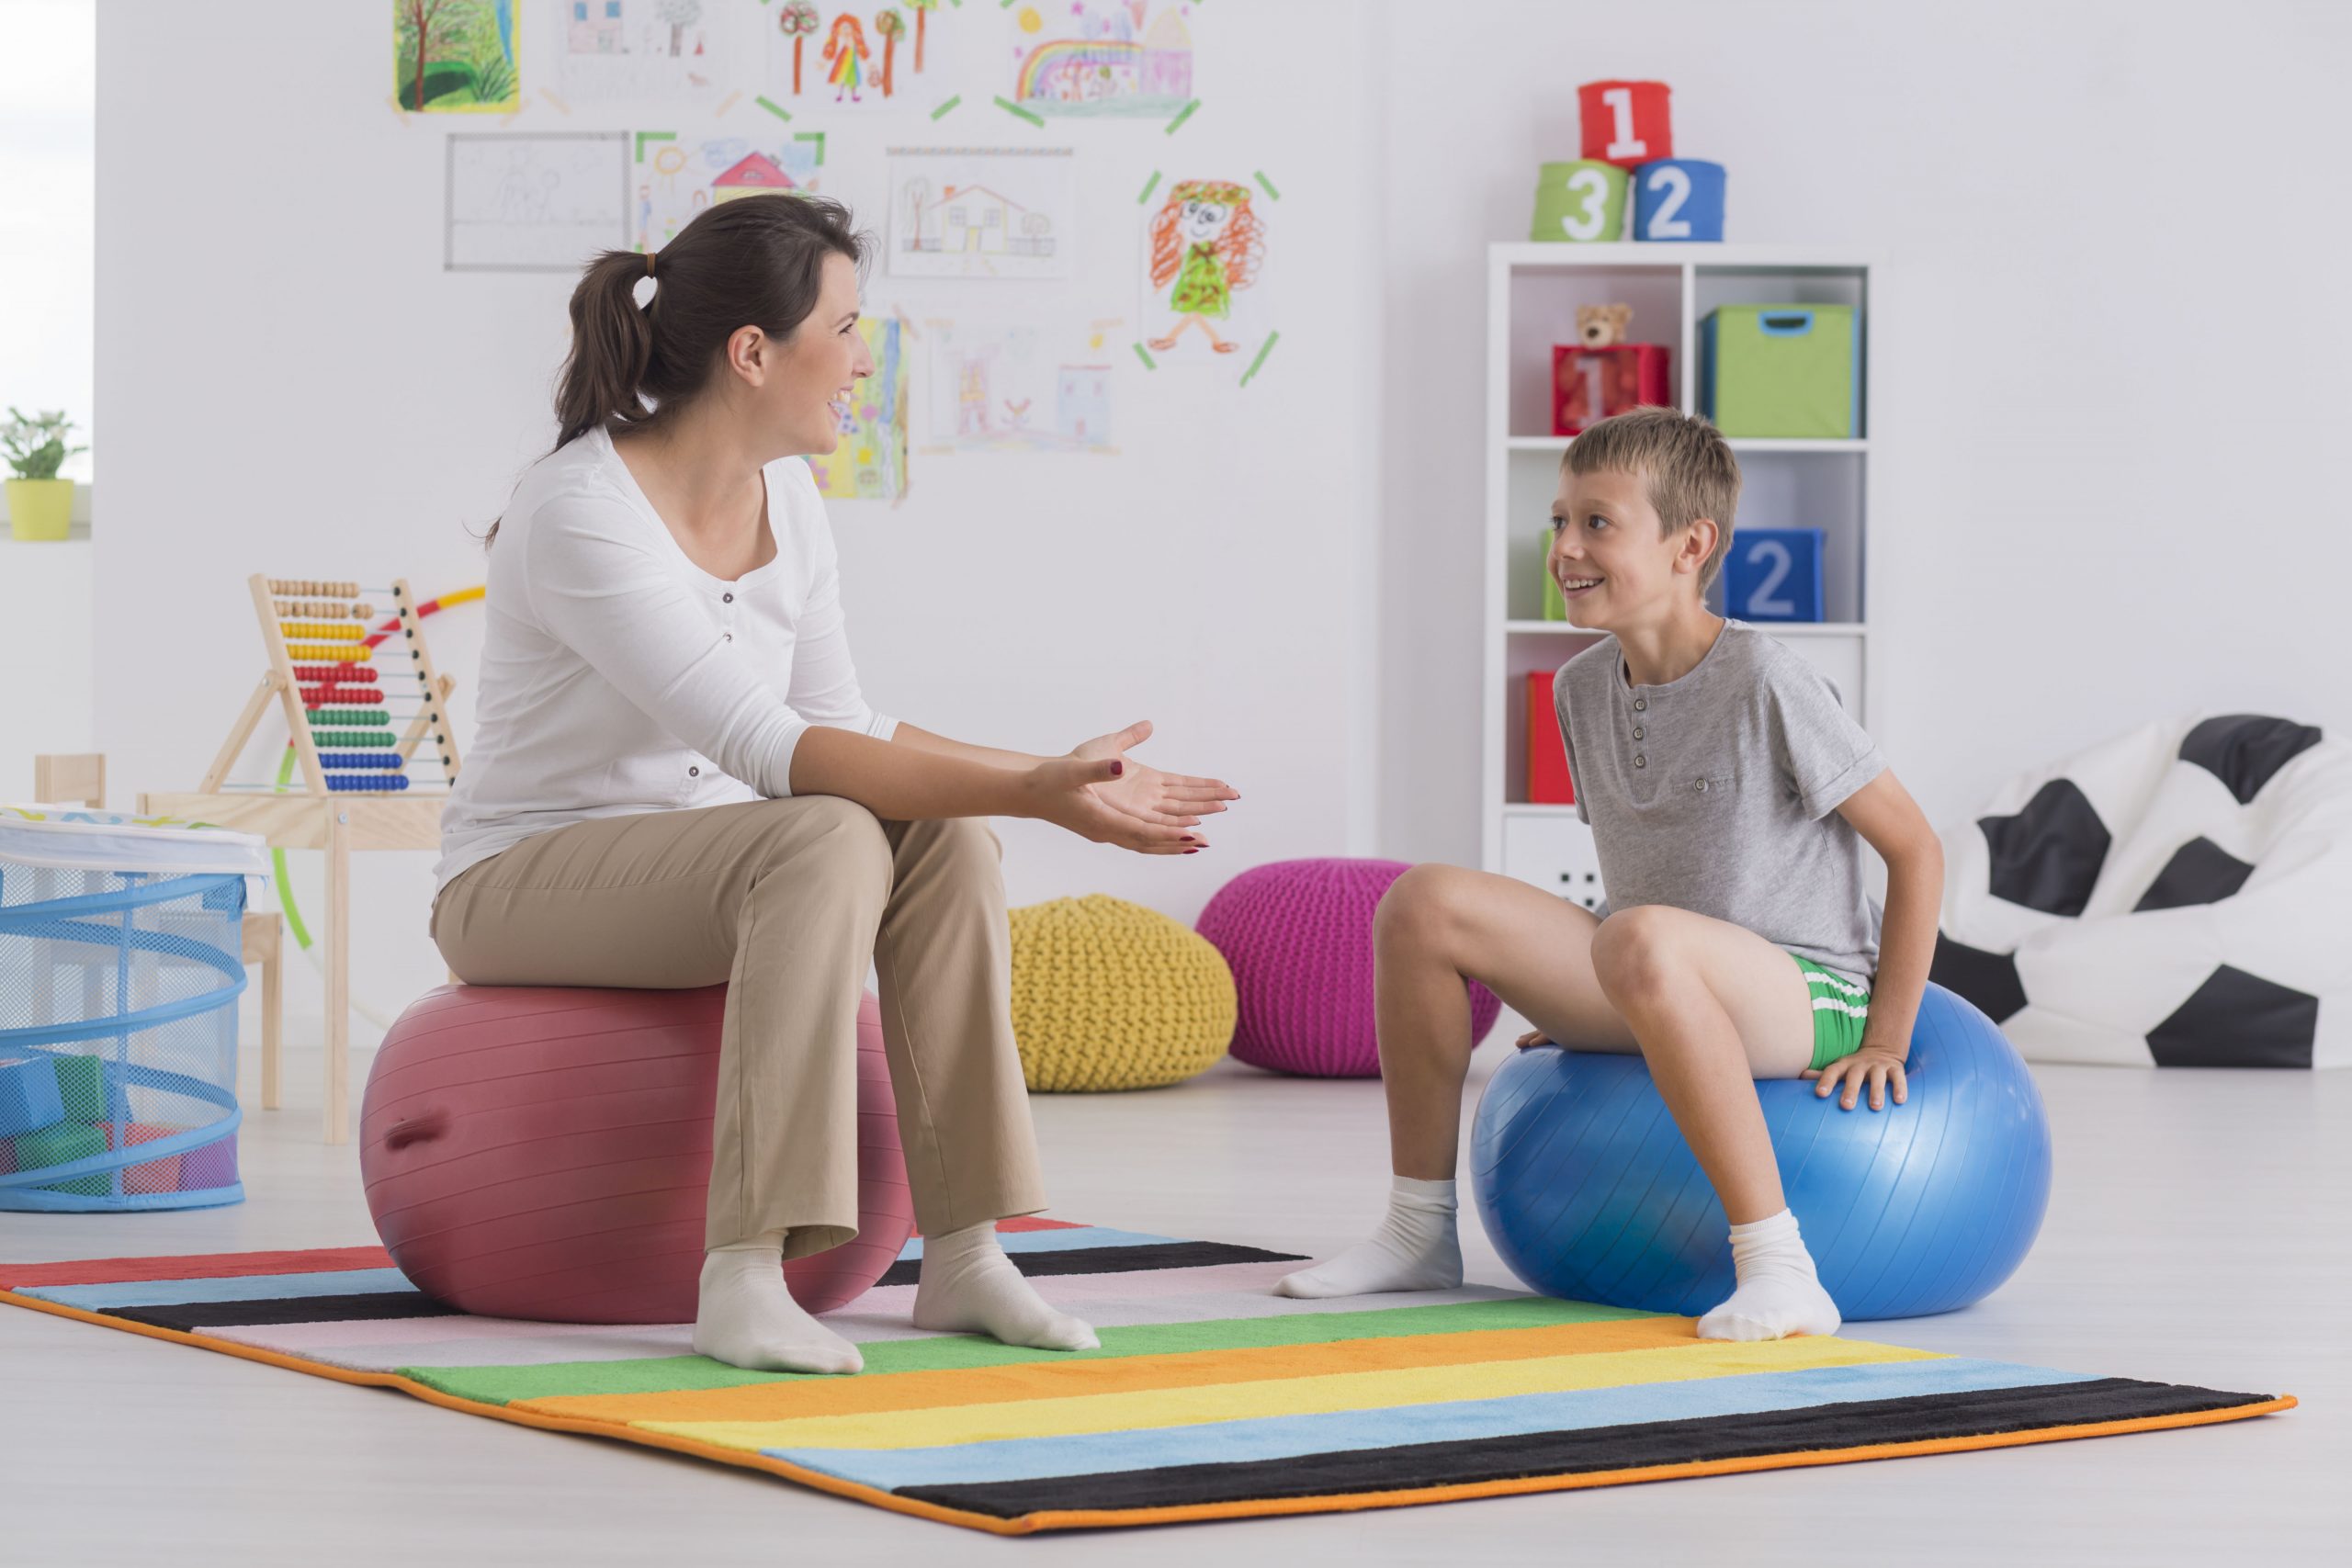 c'est une photo qui représente une sophrologue en séance avec un enfant